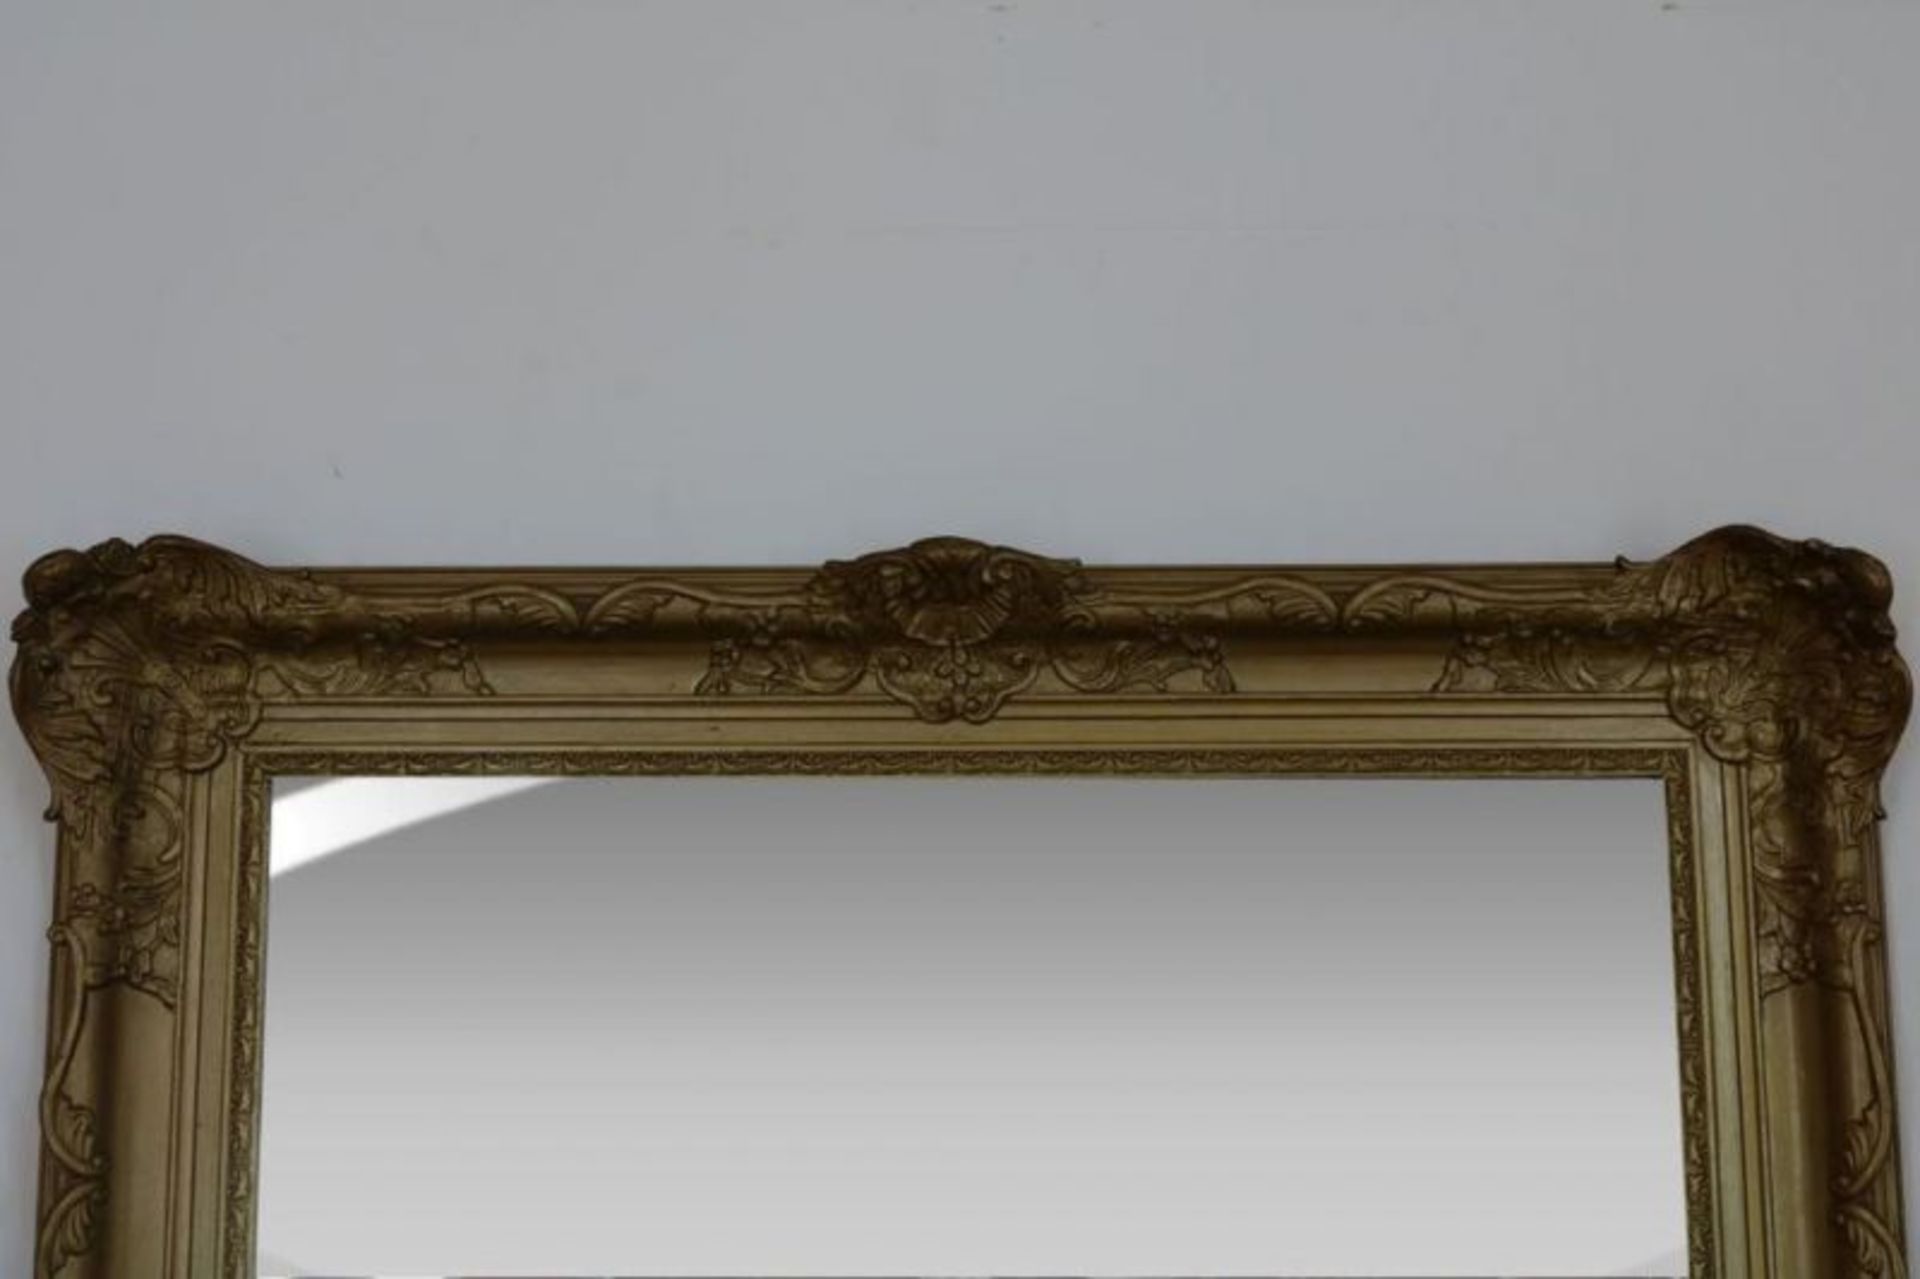 Geslepen spiegel in 19e eeuwse vergulde lijst, 125 x 104 cm. - Bild 2 aus 2